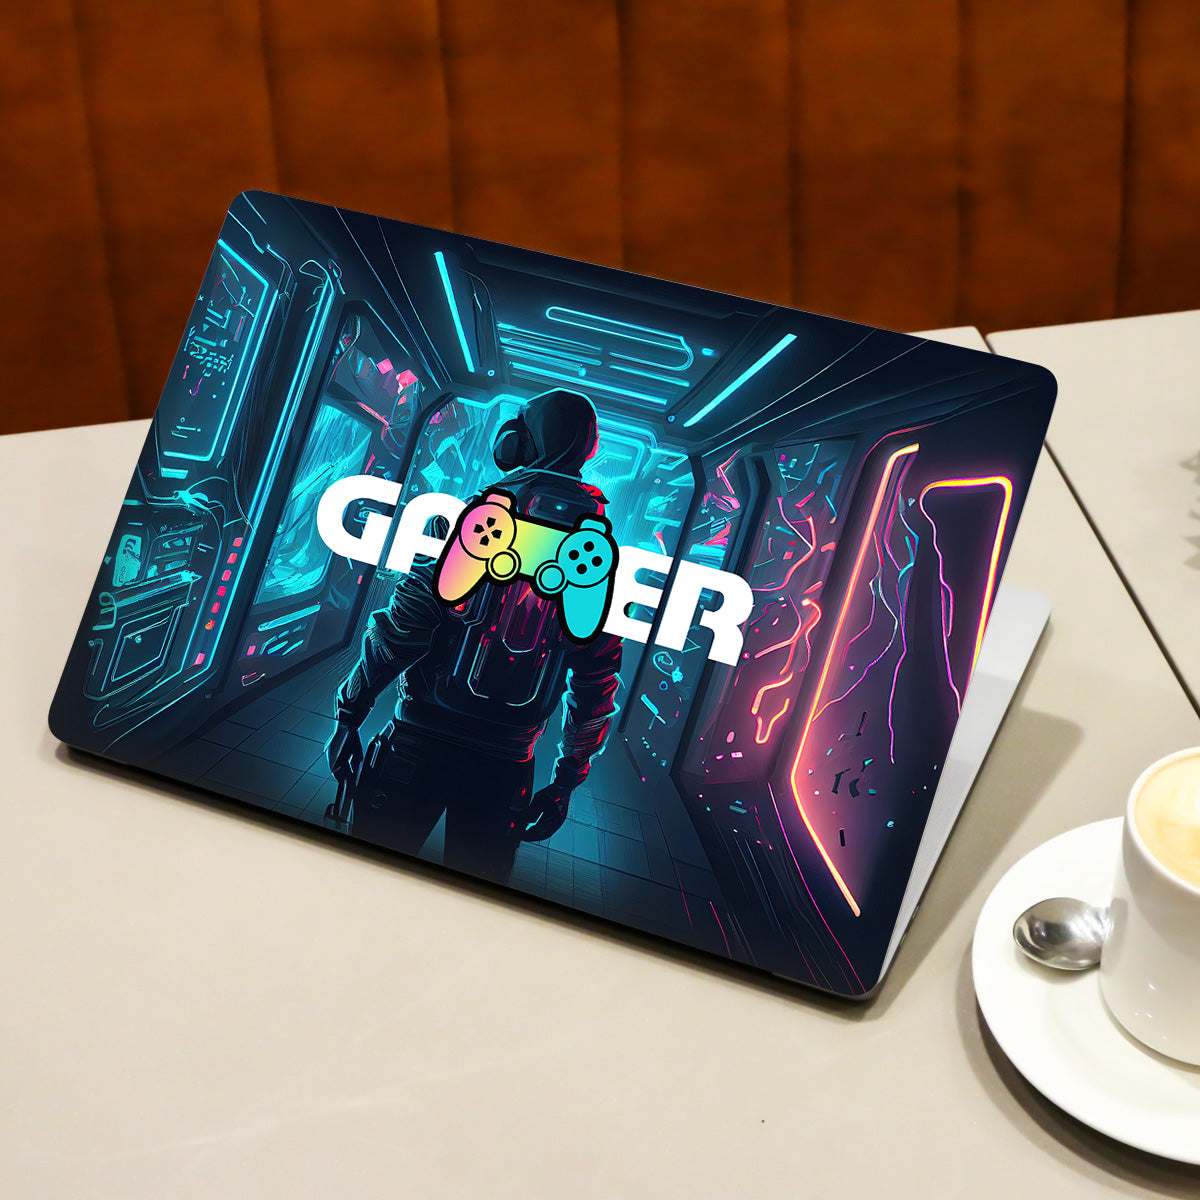 Gamer in Glowing Background Gaming Laptop Skin